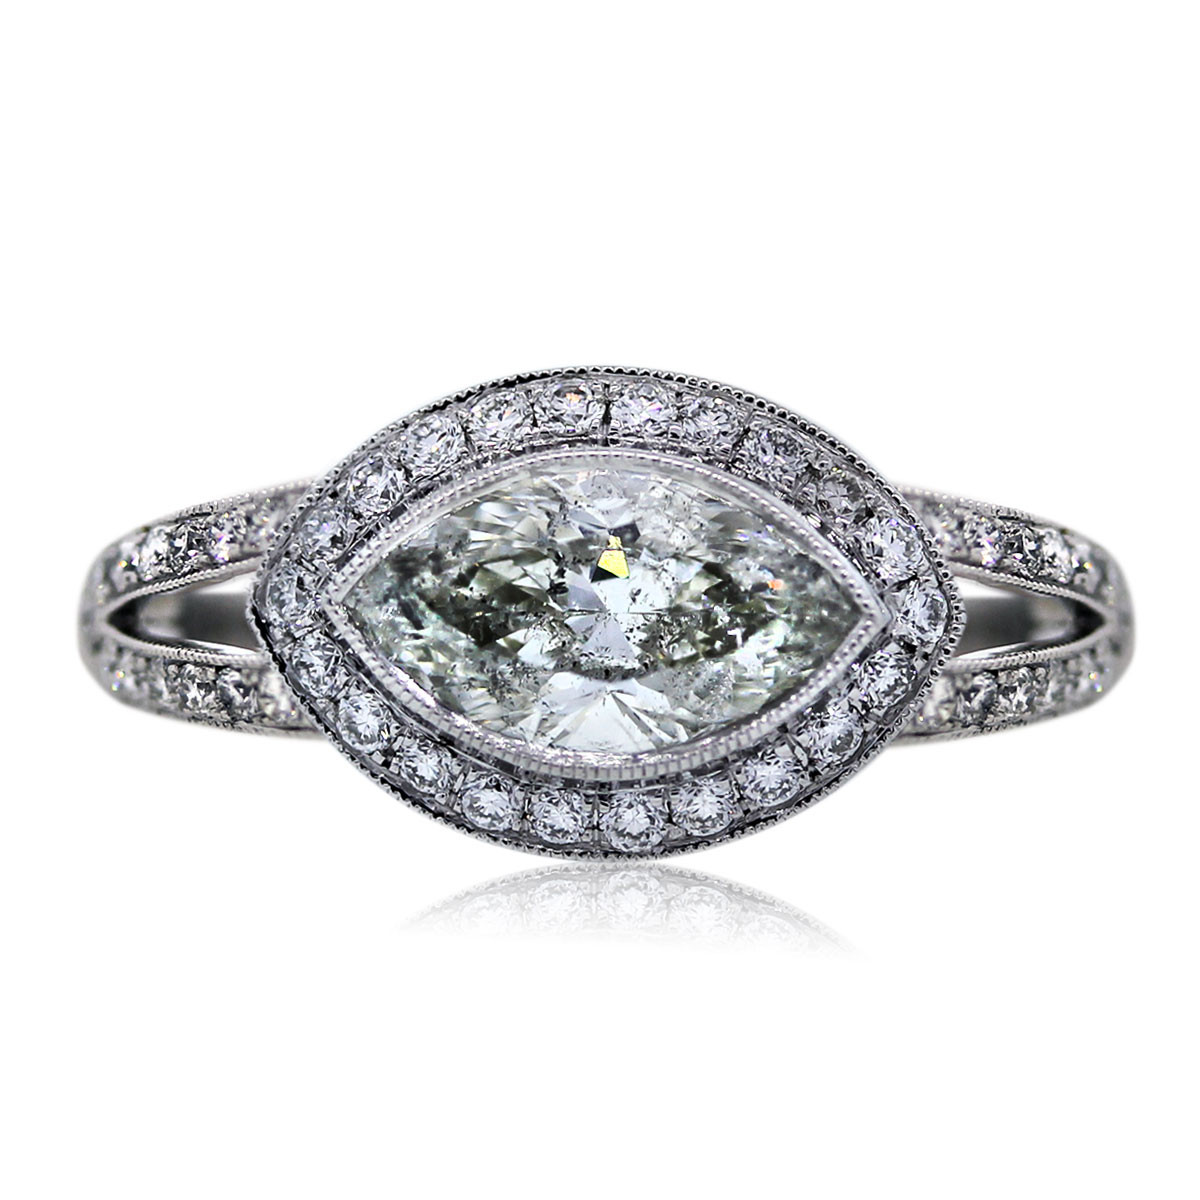 Marquise Cut Diamond Engagement Ring
 Platinum 1 49 Carat Marquise Cut Engagement Ring Boca Raton